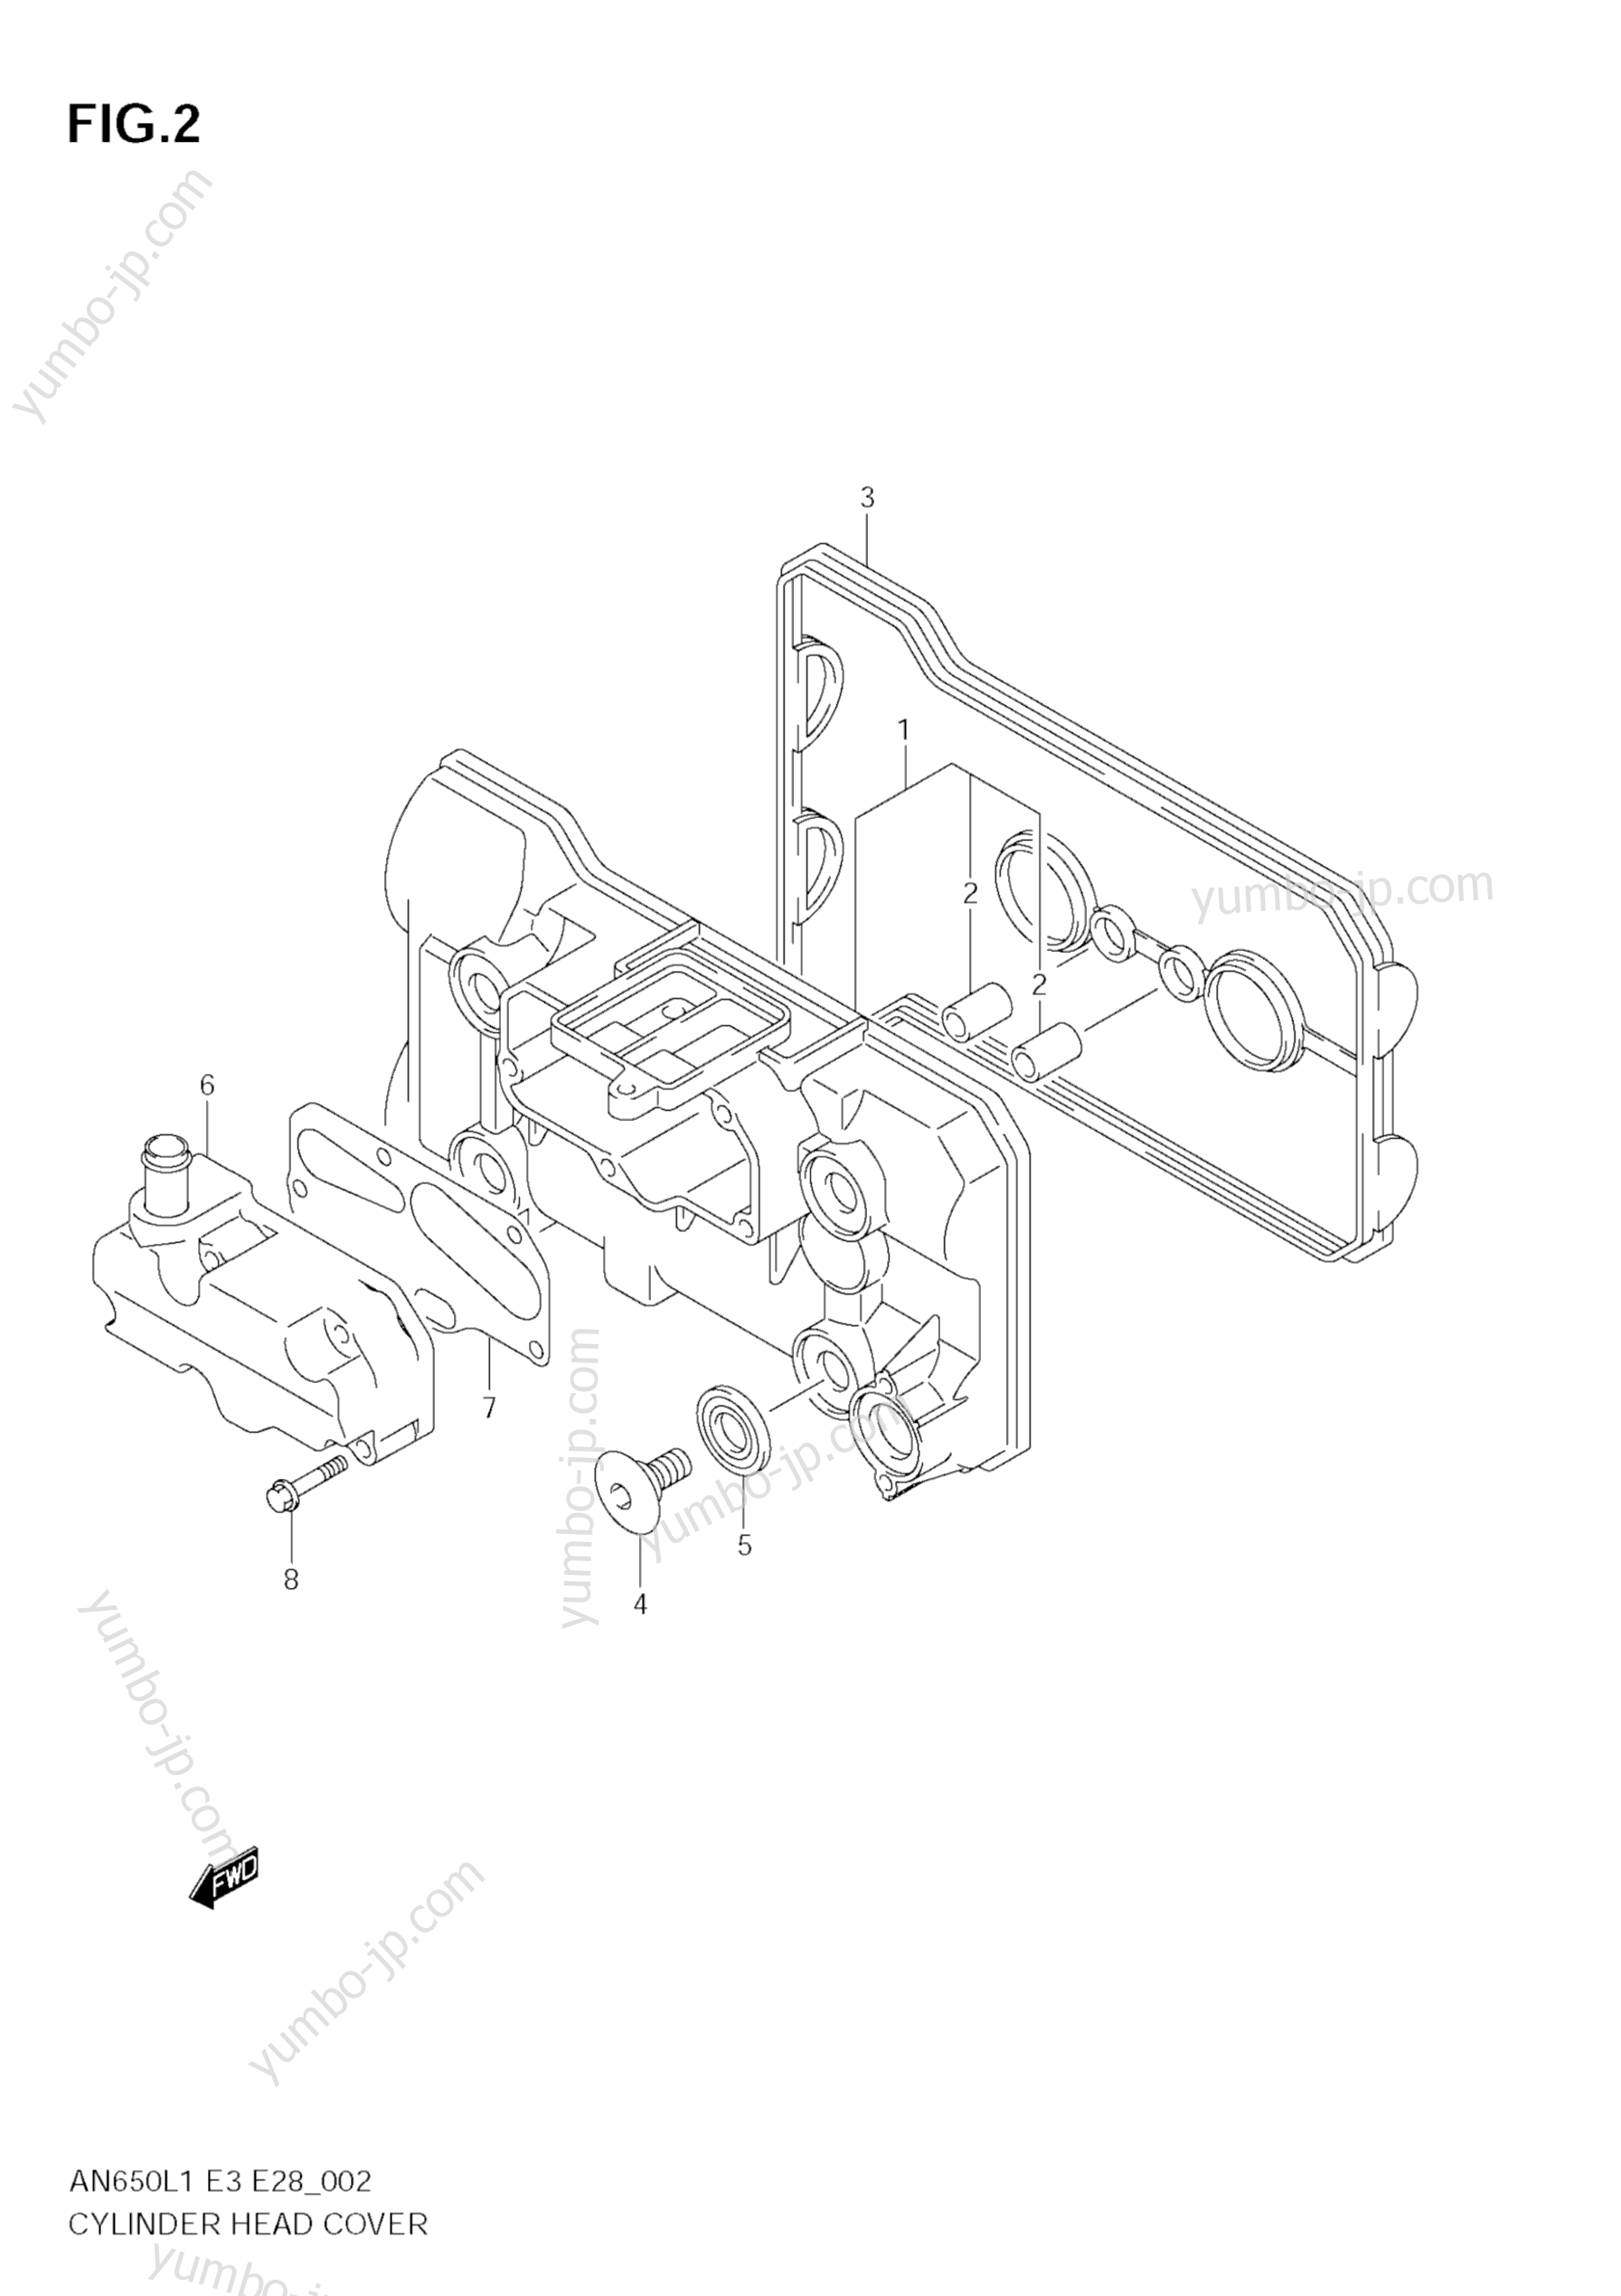 Крышка головки блока цилиндров для скутеров SUZUKI Burgman (AN650A) 2011 г.